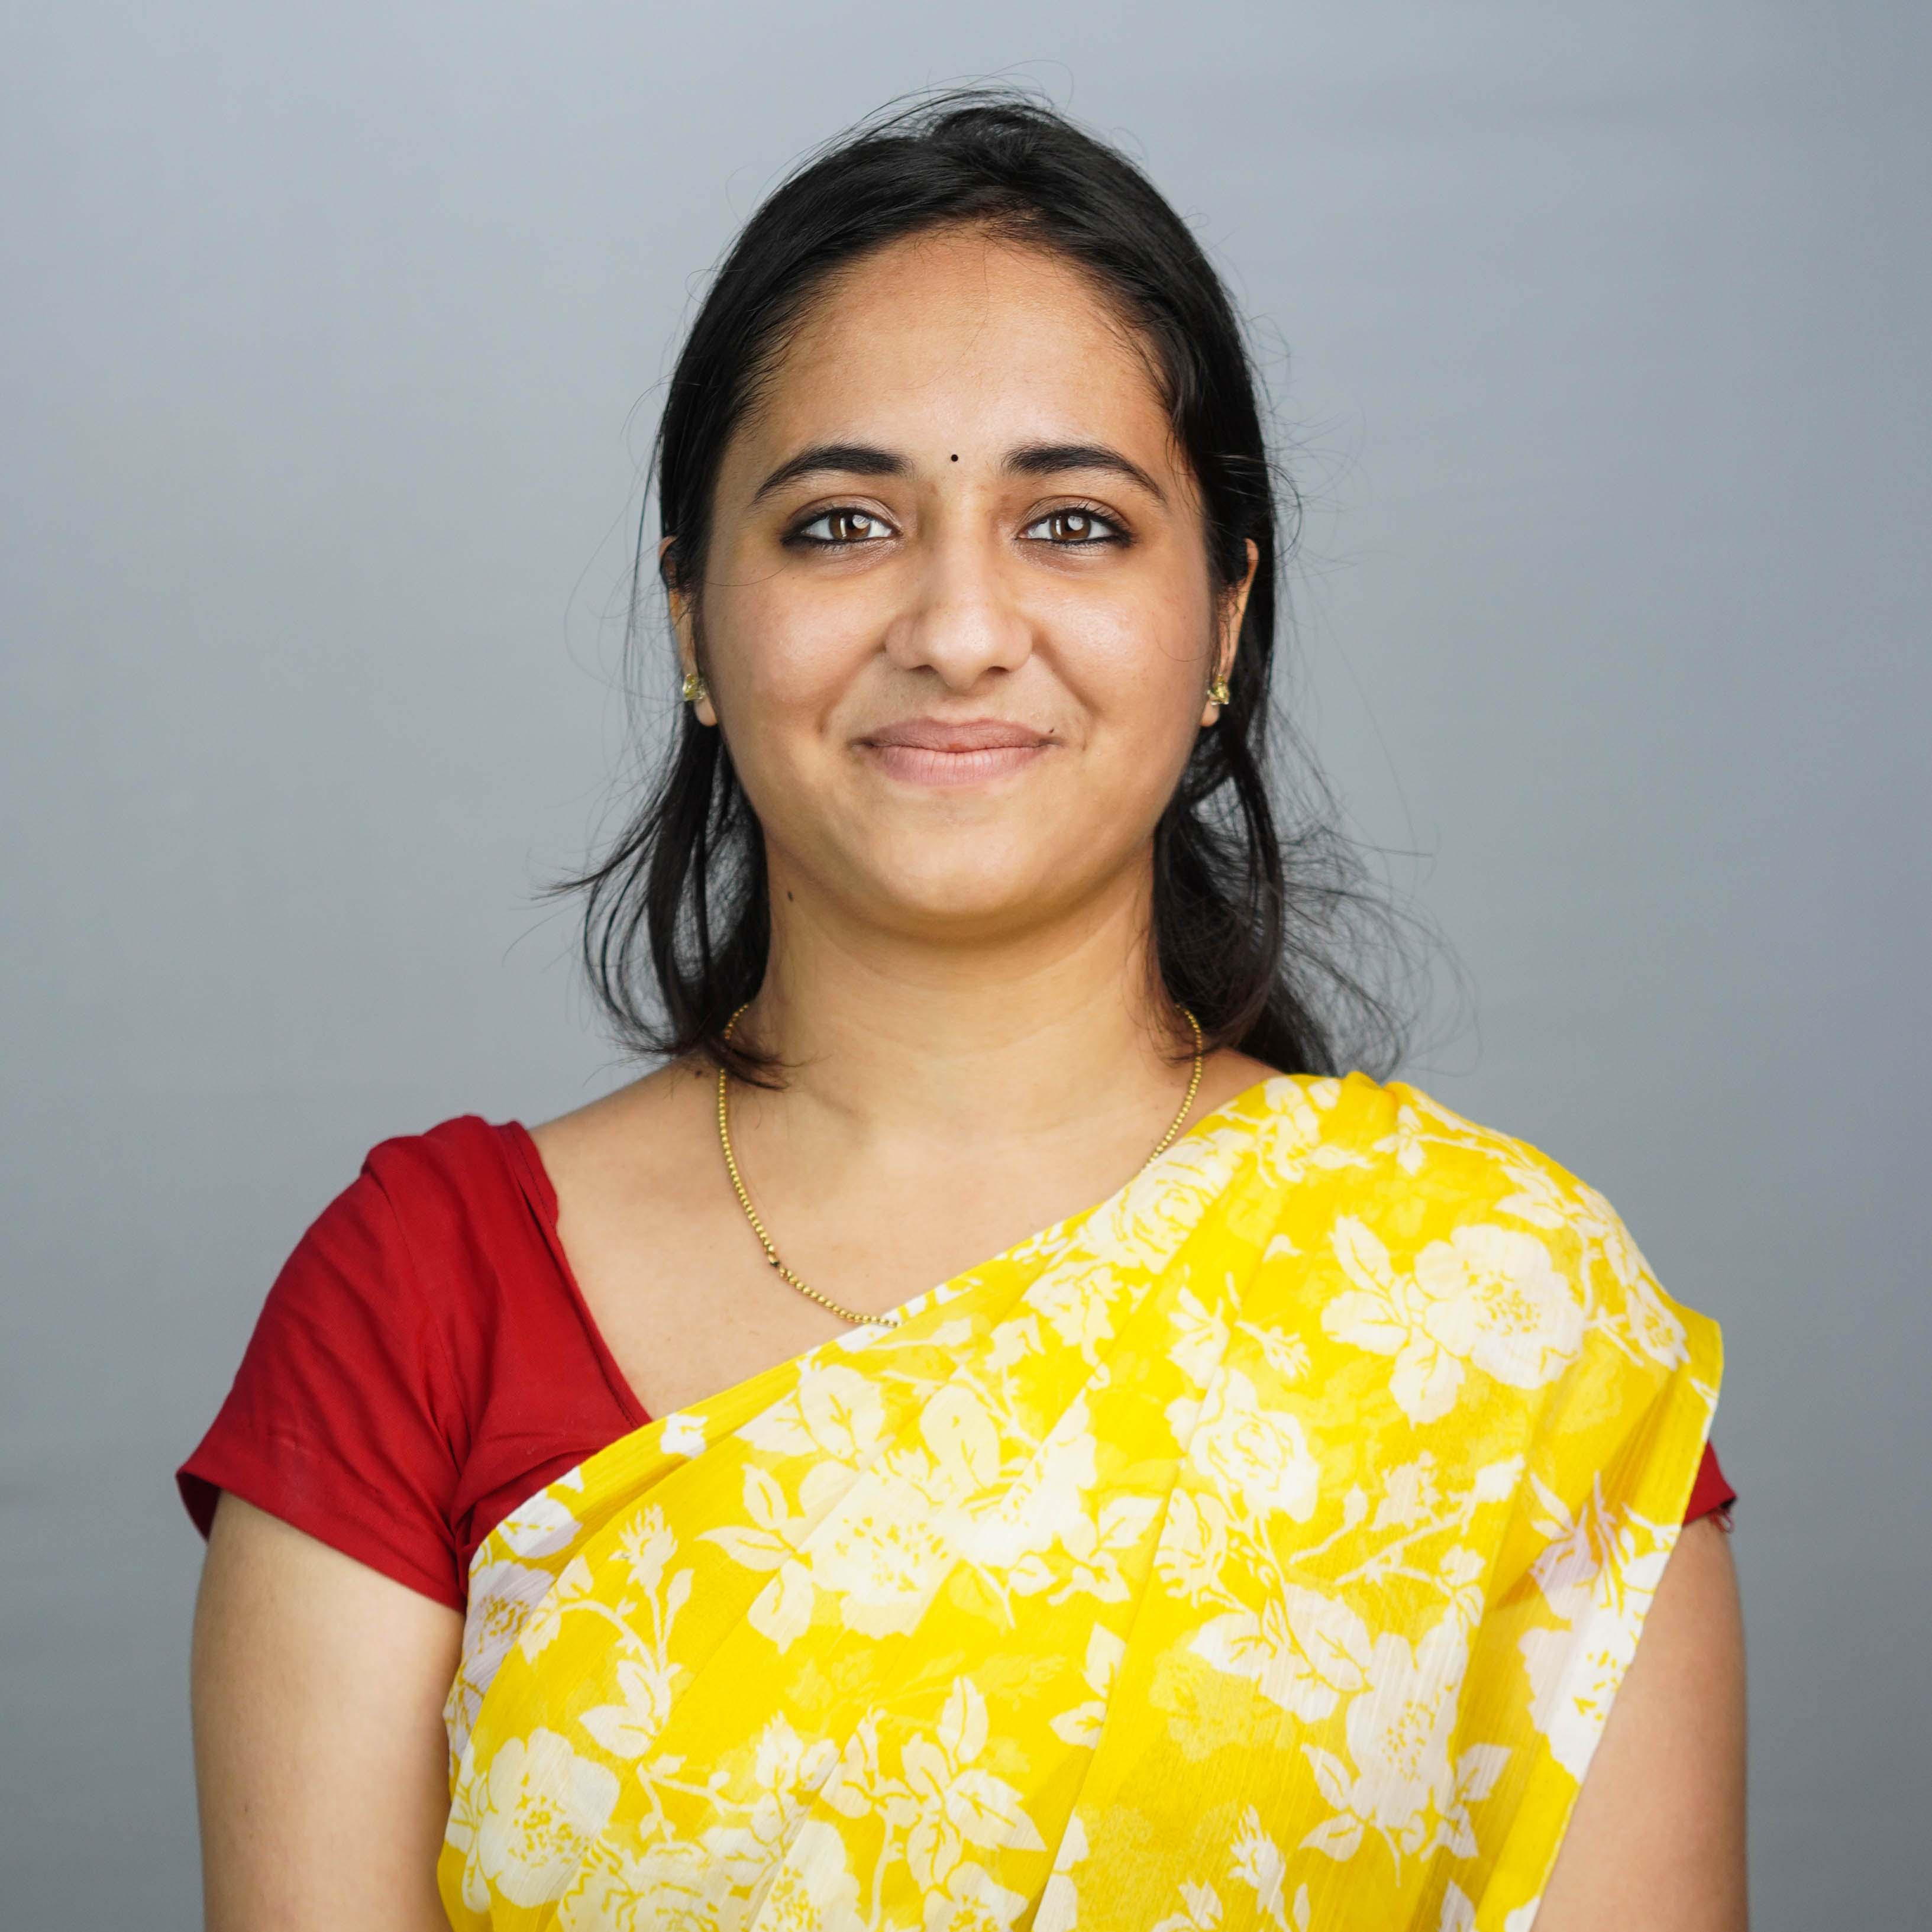 Ms. Vasudha G Rao